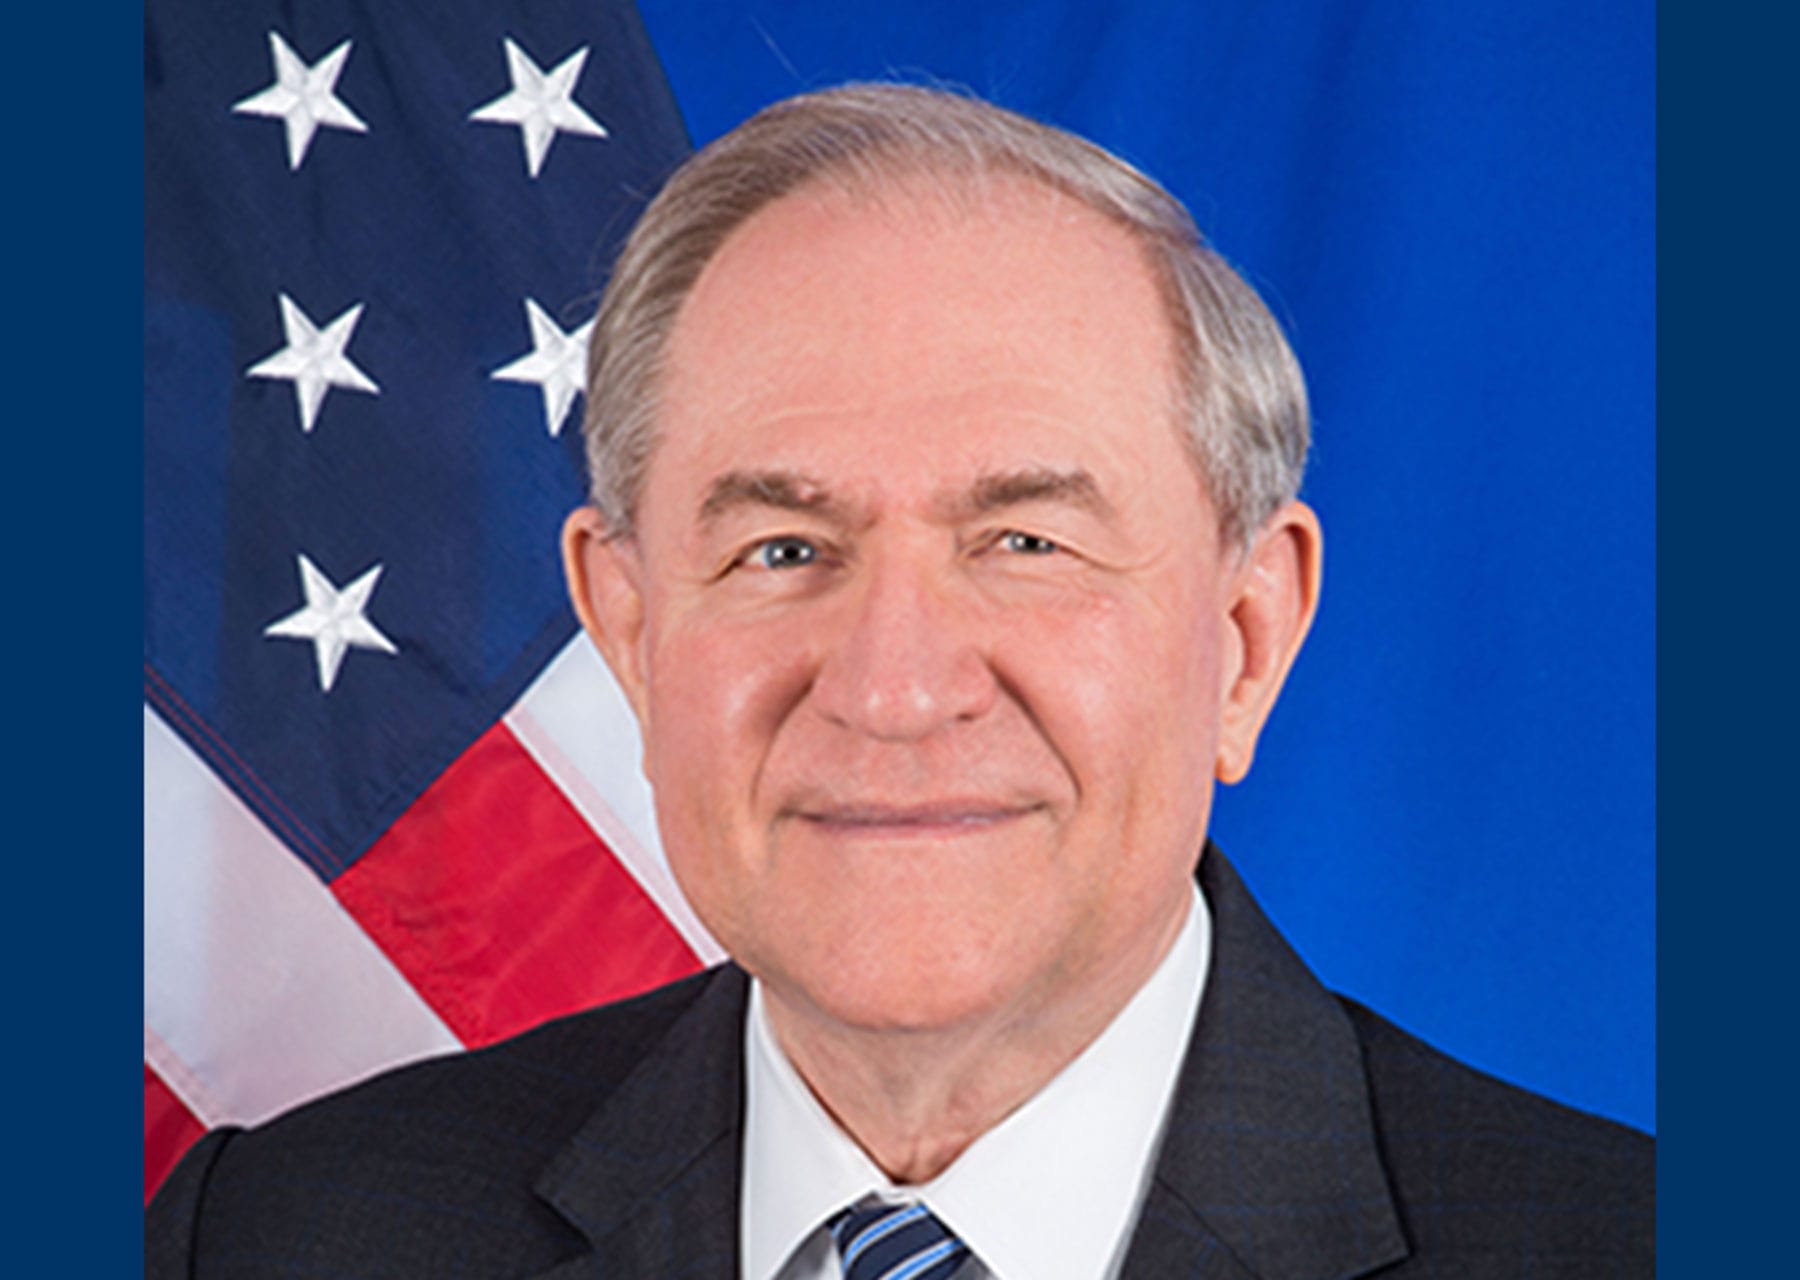 Former Virginia Governor Jim Gilmore